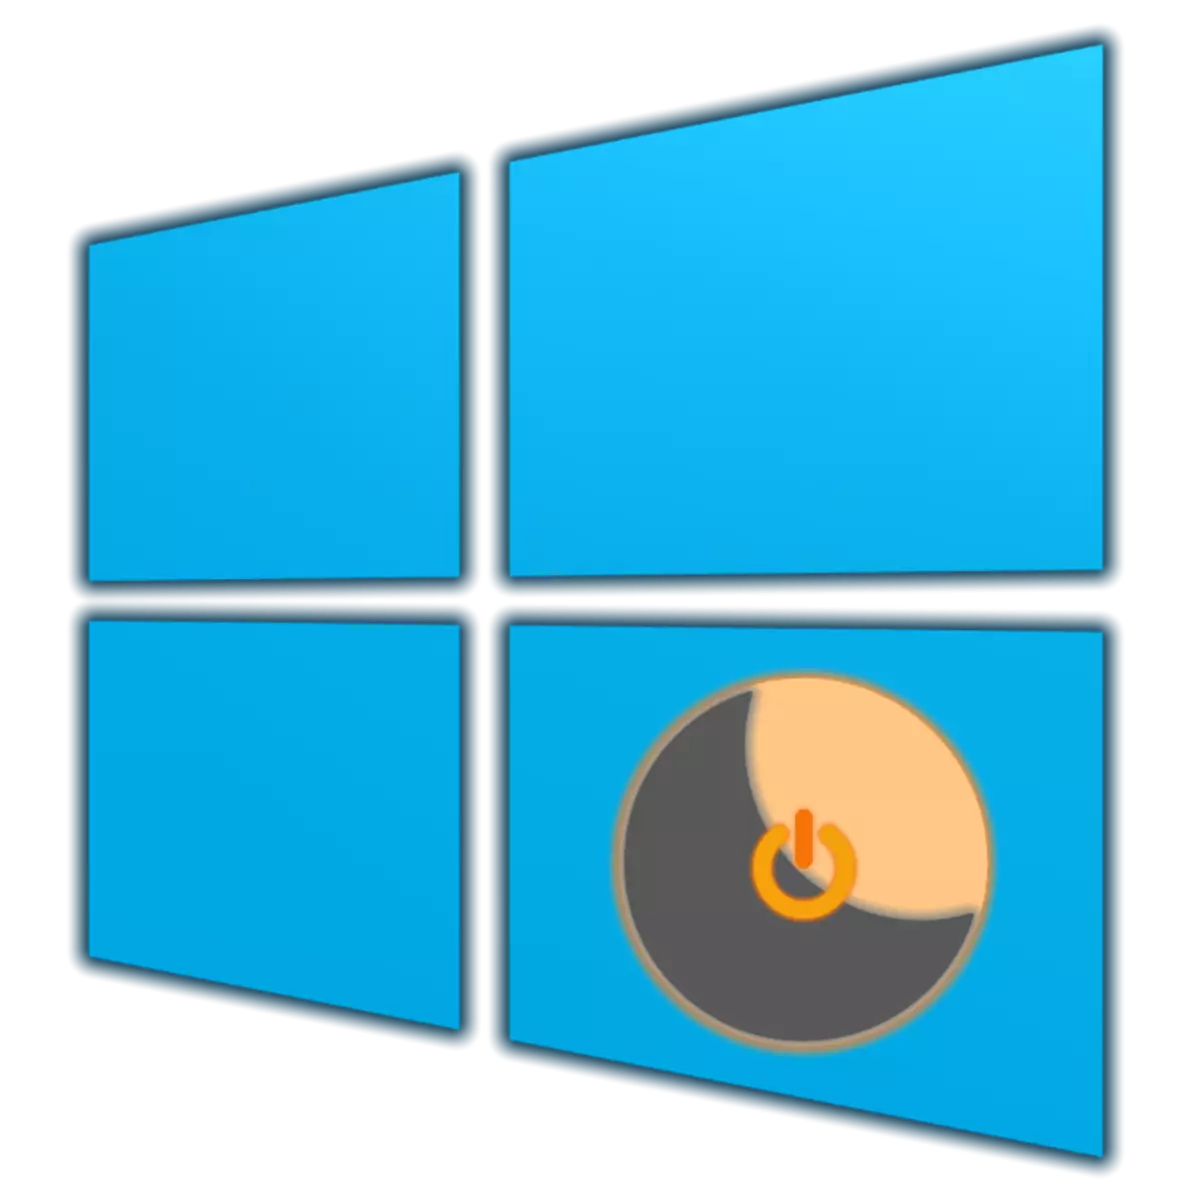 Sida loo suurto geliyo isbadalka Windows 10